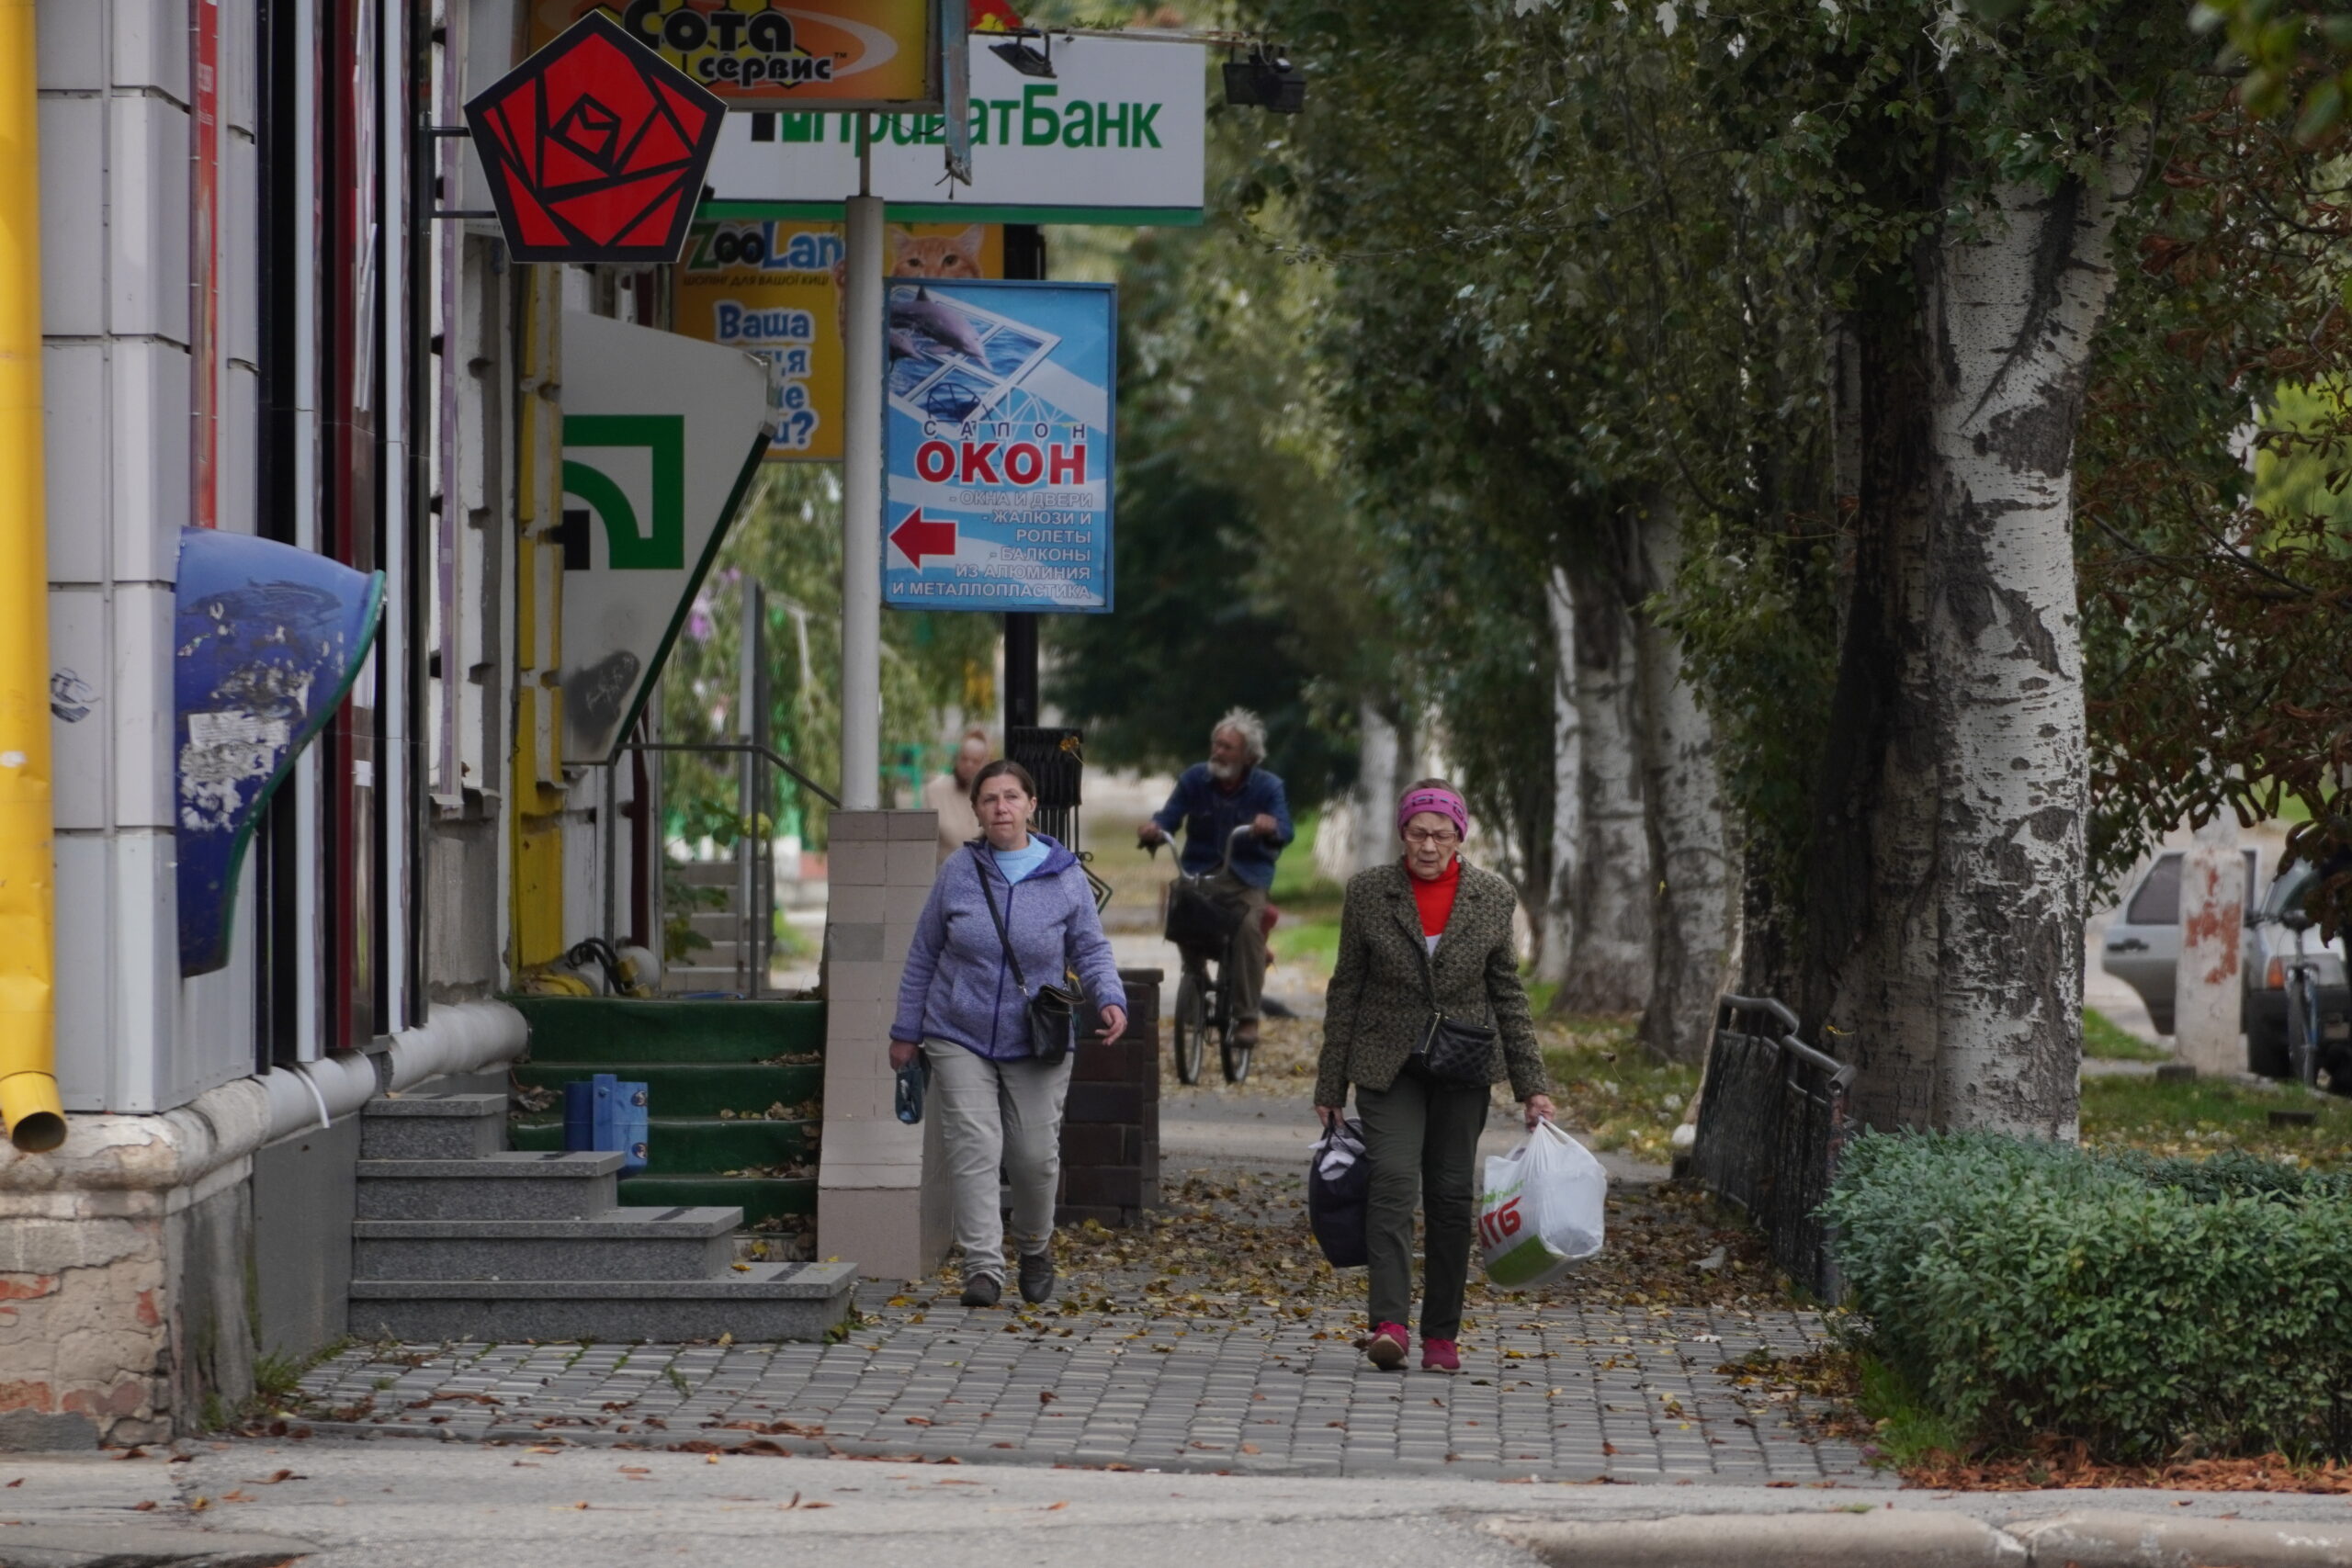 นอร์เวย์เตรียมอัดฉีดเงินช่วยยูเครนซื้อ 'ก๊าซ' ช่วงฤดูหนาว